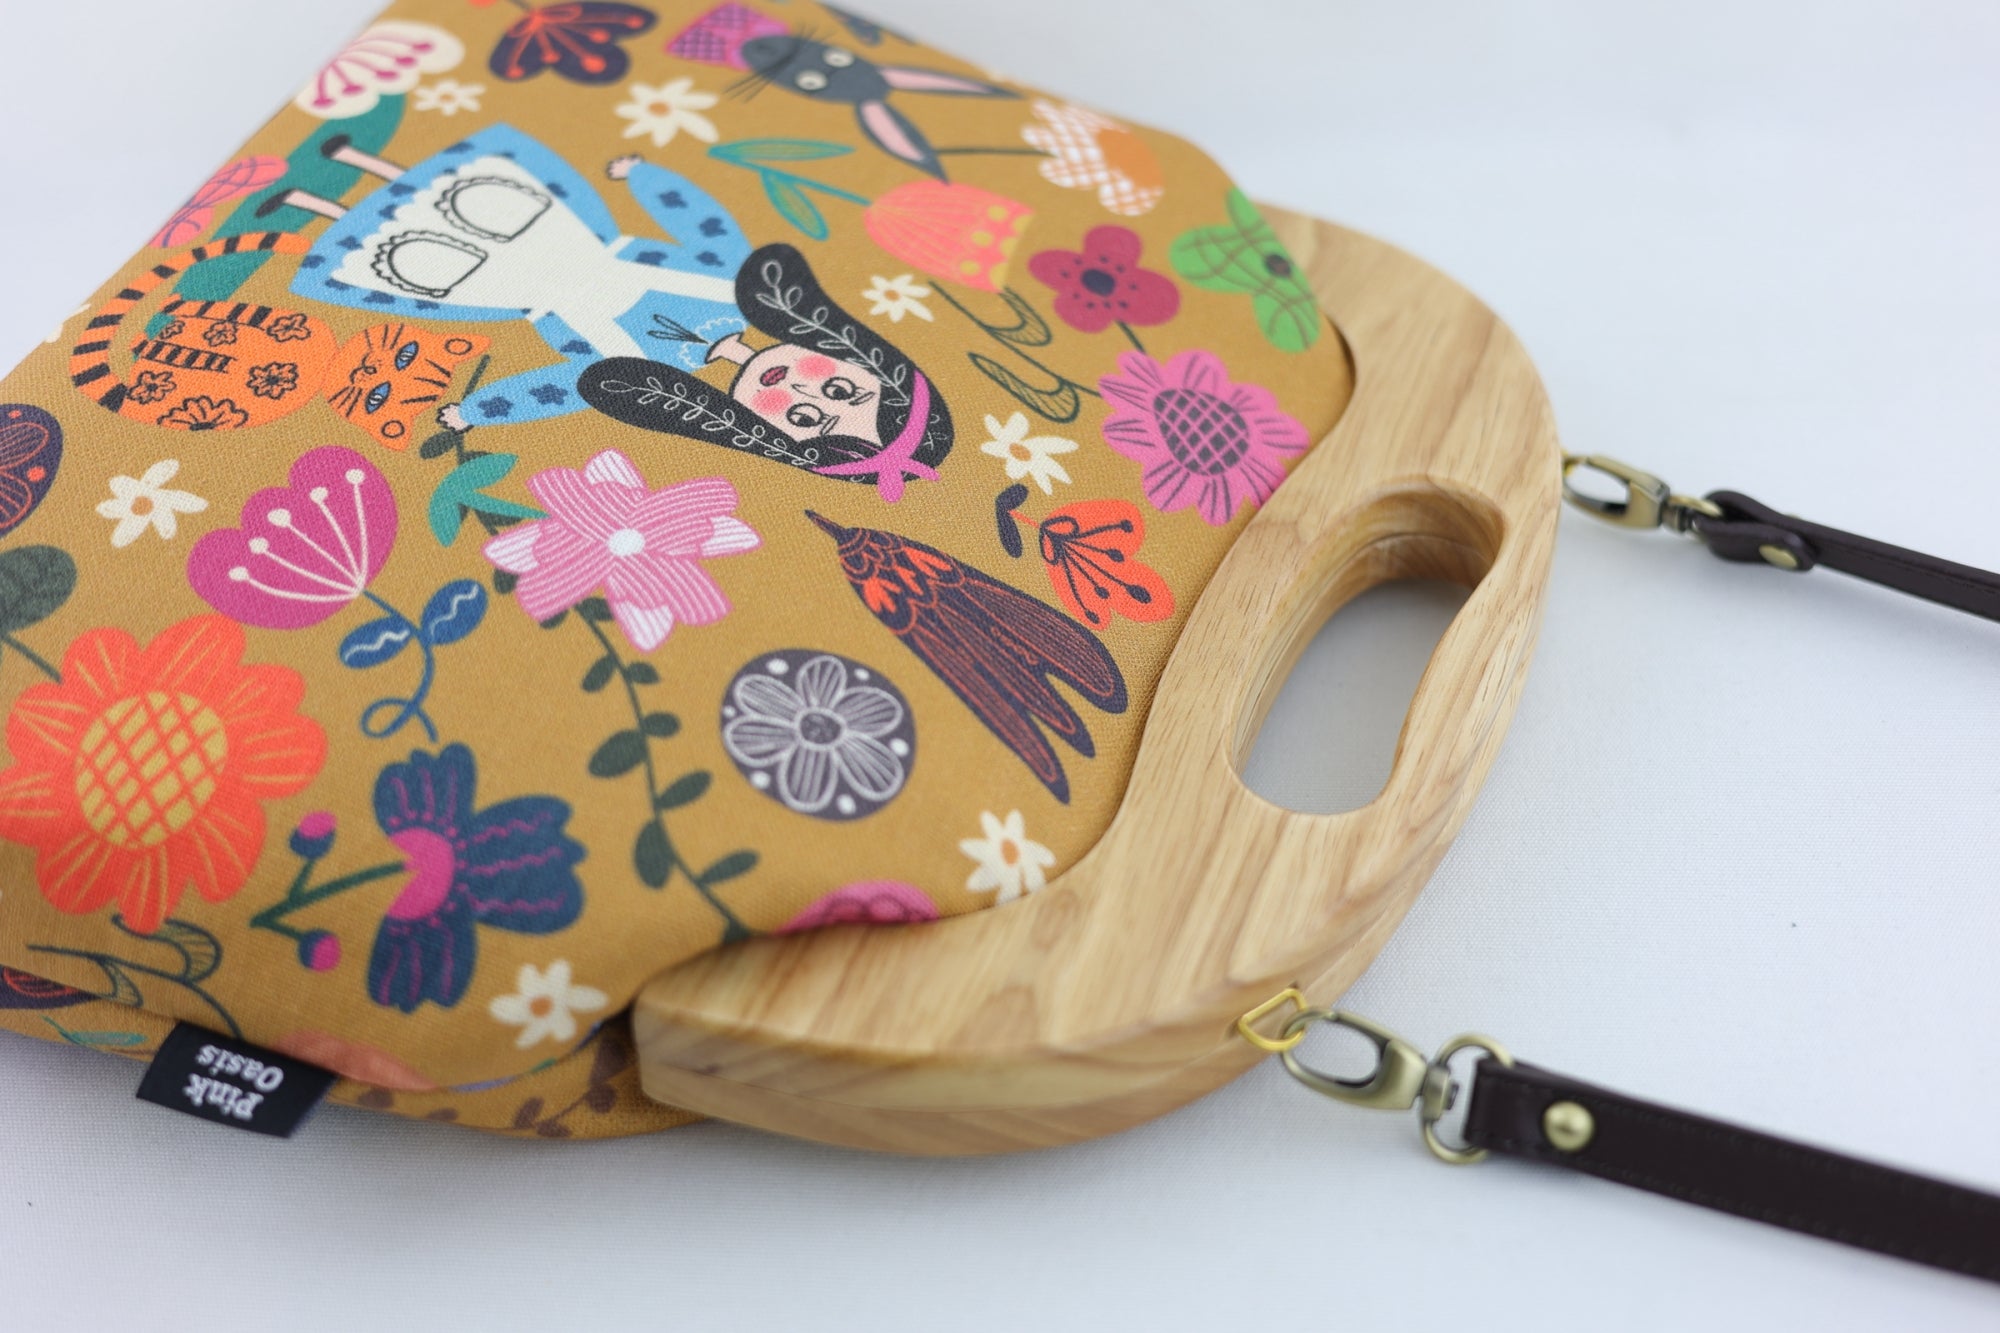 Alice in wonderland Clutch Bag | PINK OASIS